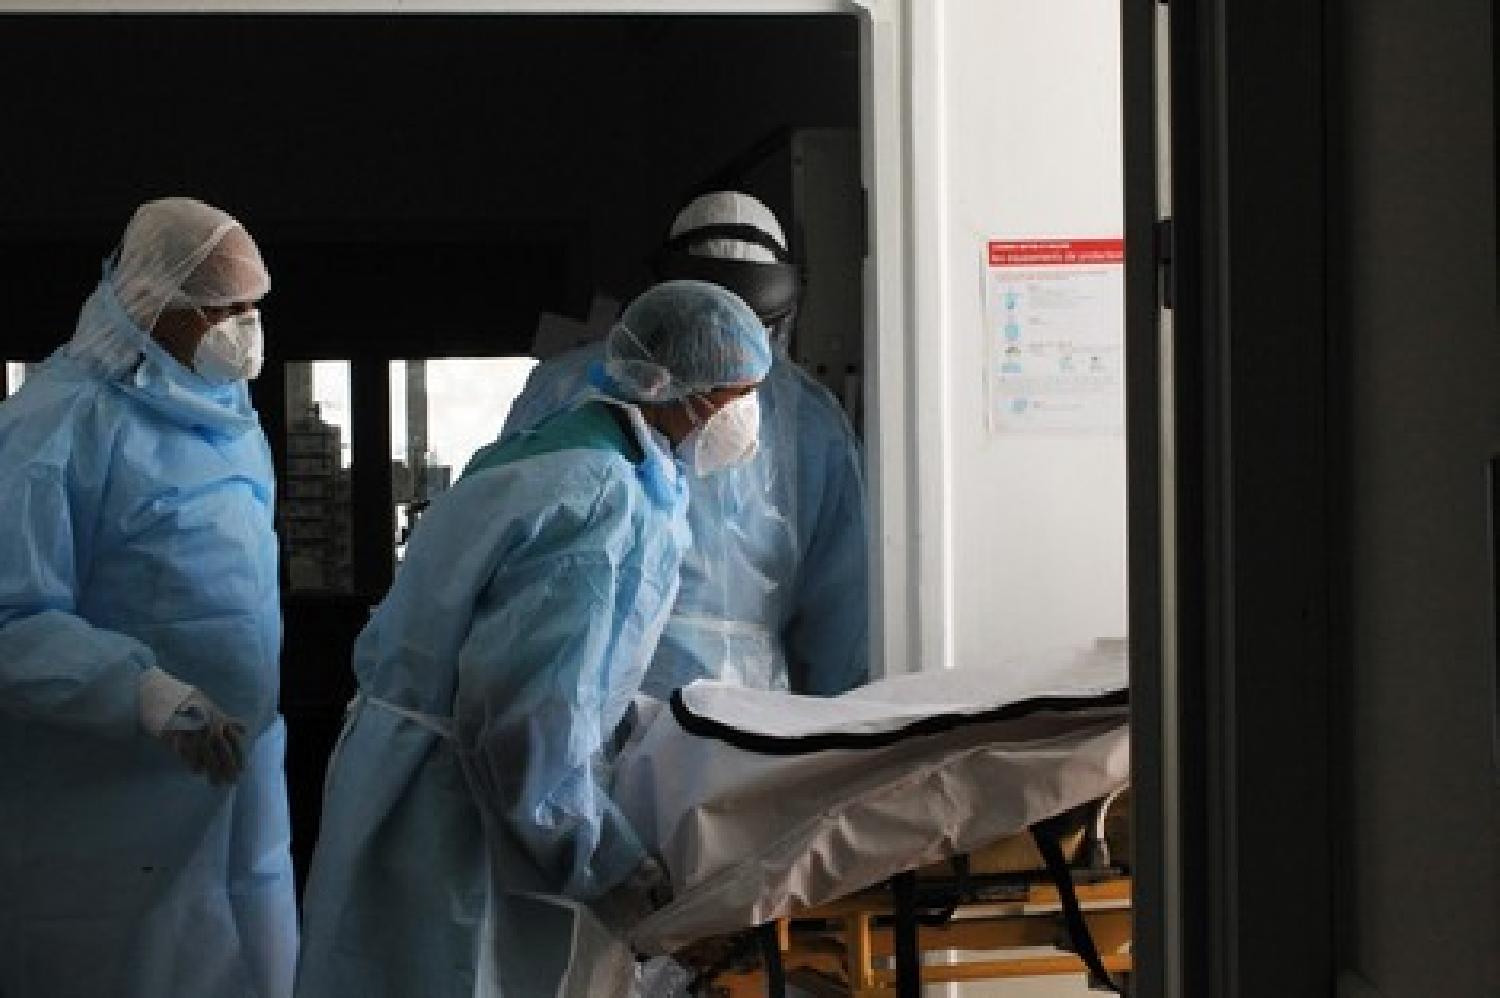 تسجيل 122 إصابة مؤكدة جديدة بفيروس كورونا خلال الـ24 ساعة الماضية بالمغرب